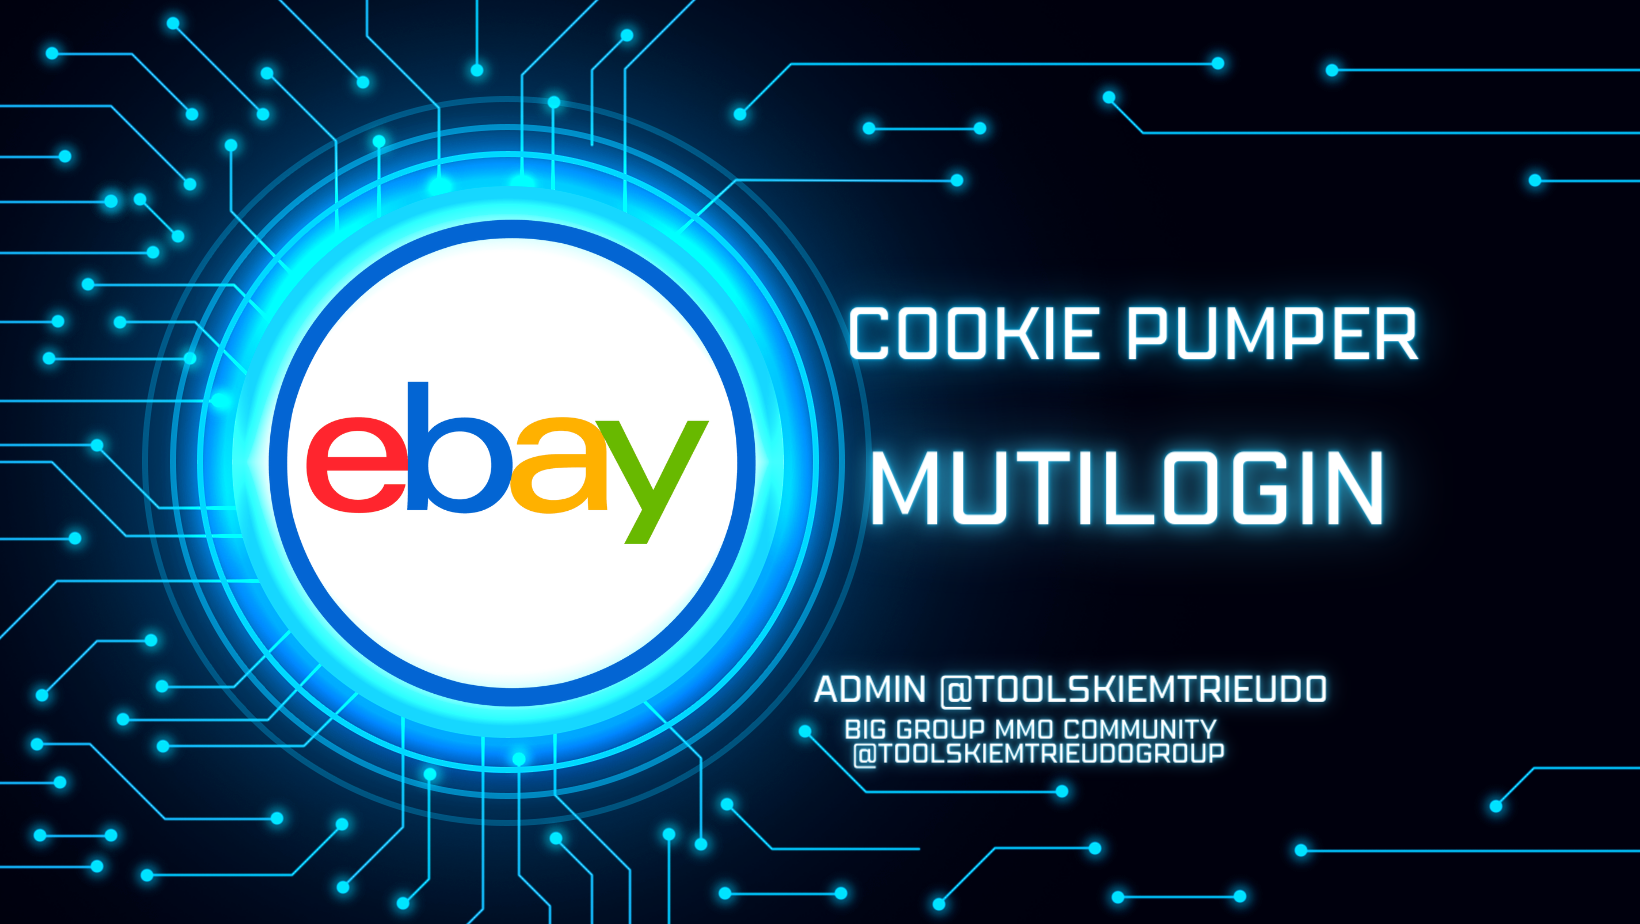 Công cụ tự động nuôi số lượng lớn tài khoản ebay – eBay Cookie Pumper là một công cụ cho Antidetect browser Mutilogin của Tools Kiếm Triệu Đô